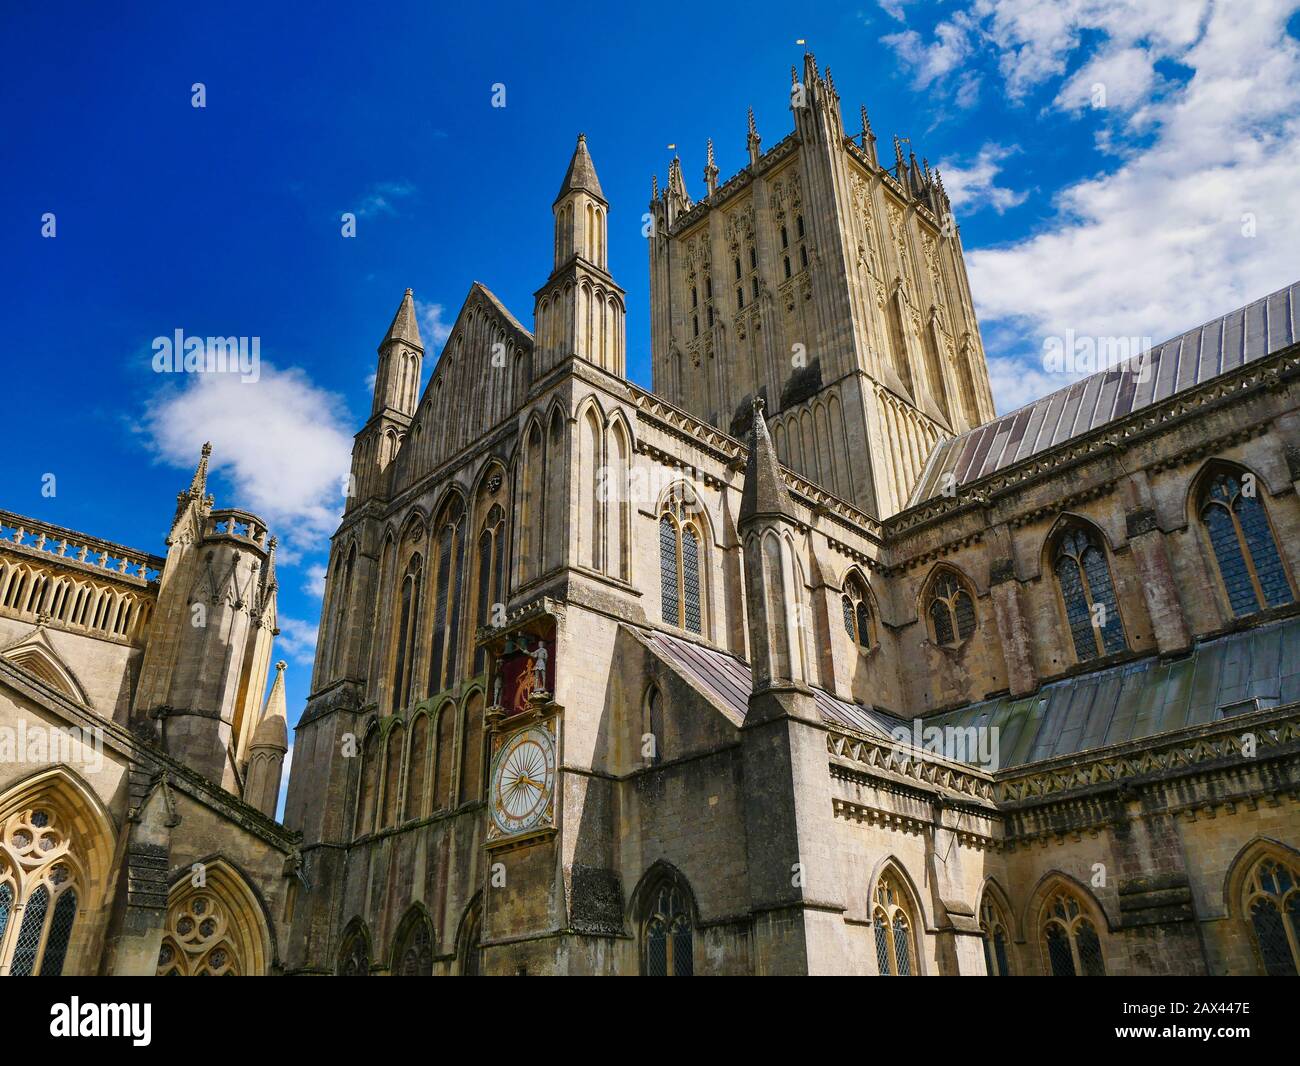 Ein Blick von außen auf die Kathedrale von Wells in Somerset, Großbritannien, Sitz des Bishop of Bath and Wells mit Turm, Langhaus und nordischem Querhaus Stockfoto